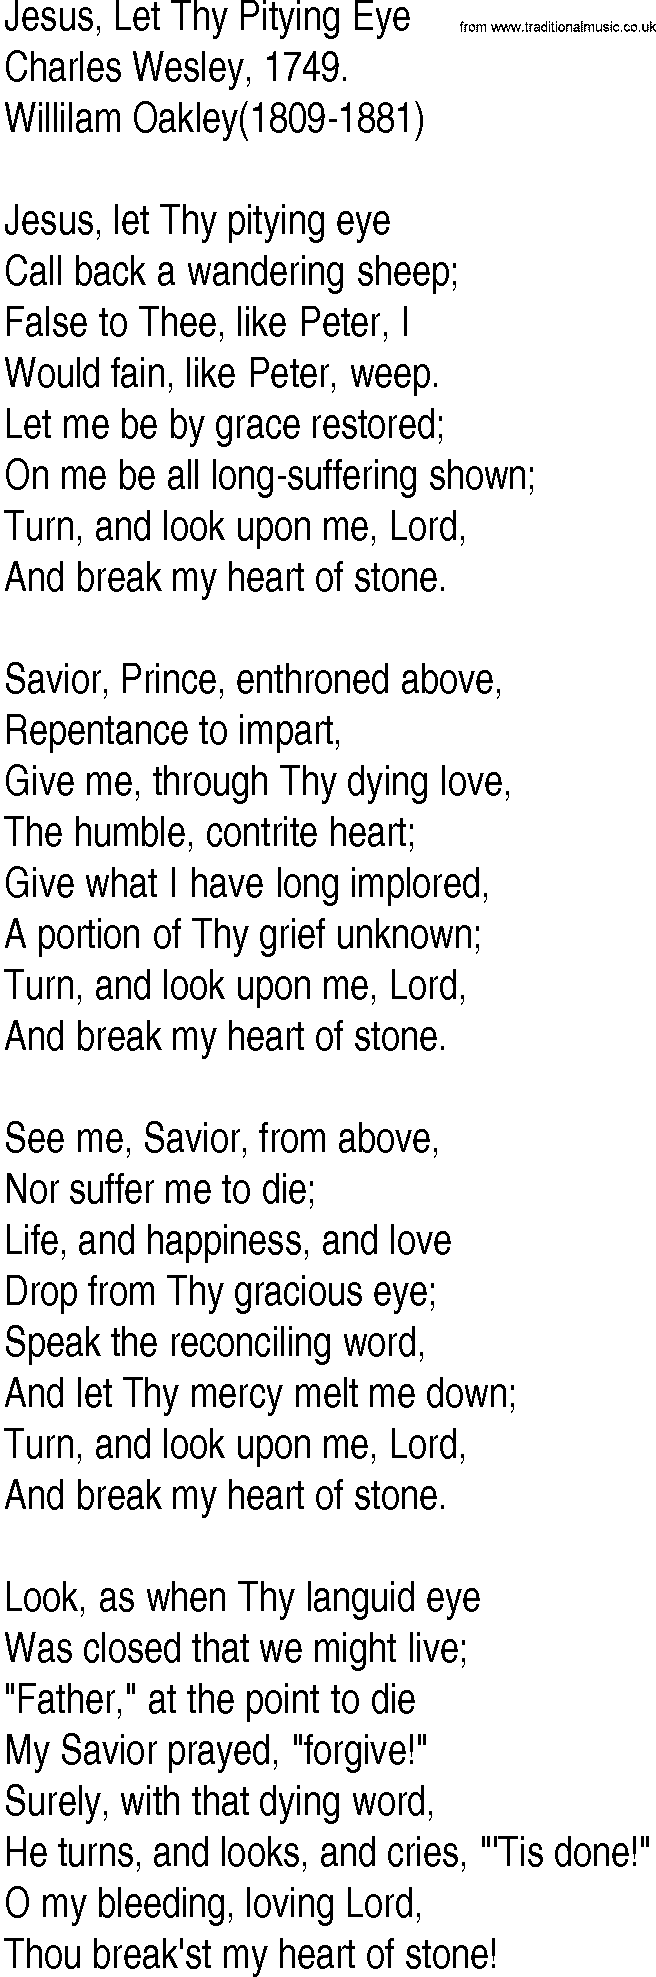 Hymn and Gospel Song: Jesus, Let Thy Pitying Eye by Charles Wesley lyrics